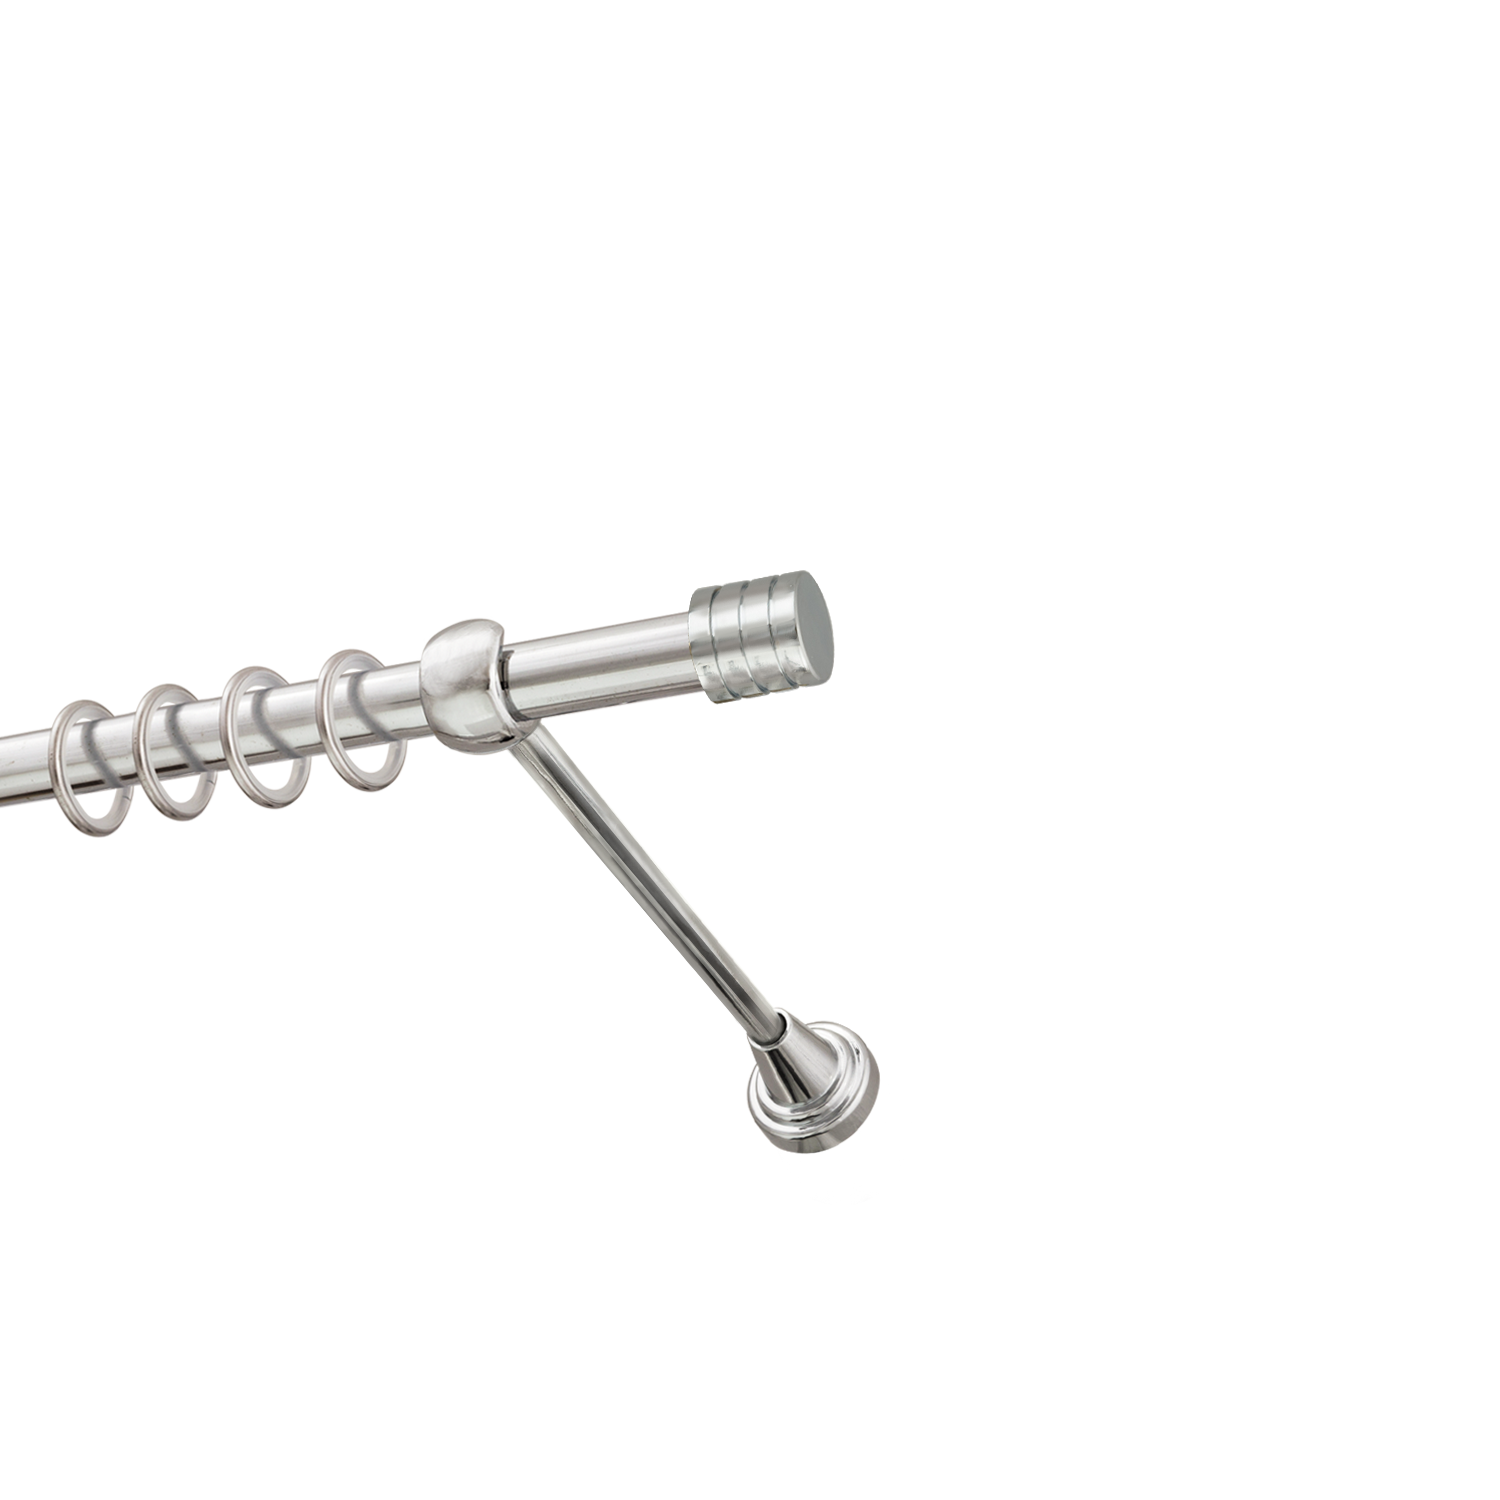 Металлический карниз для штор Подиум, однорядный 16 мм, серебро, гладкая штанга, длина 160 см - фото Wikidecor.ru